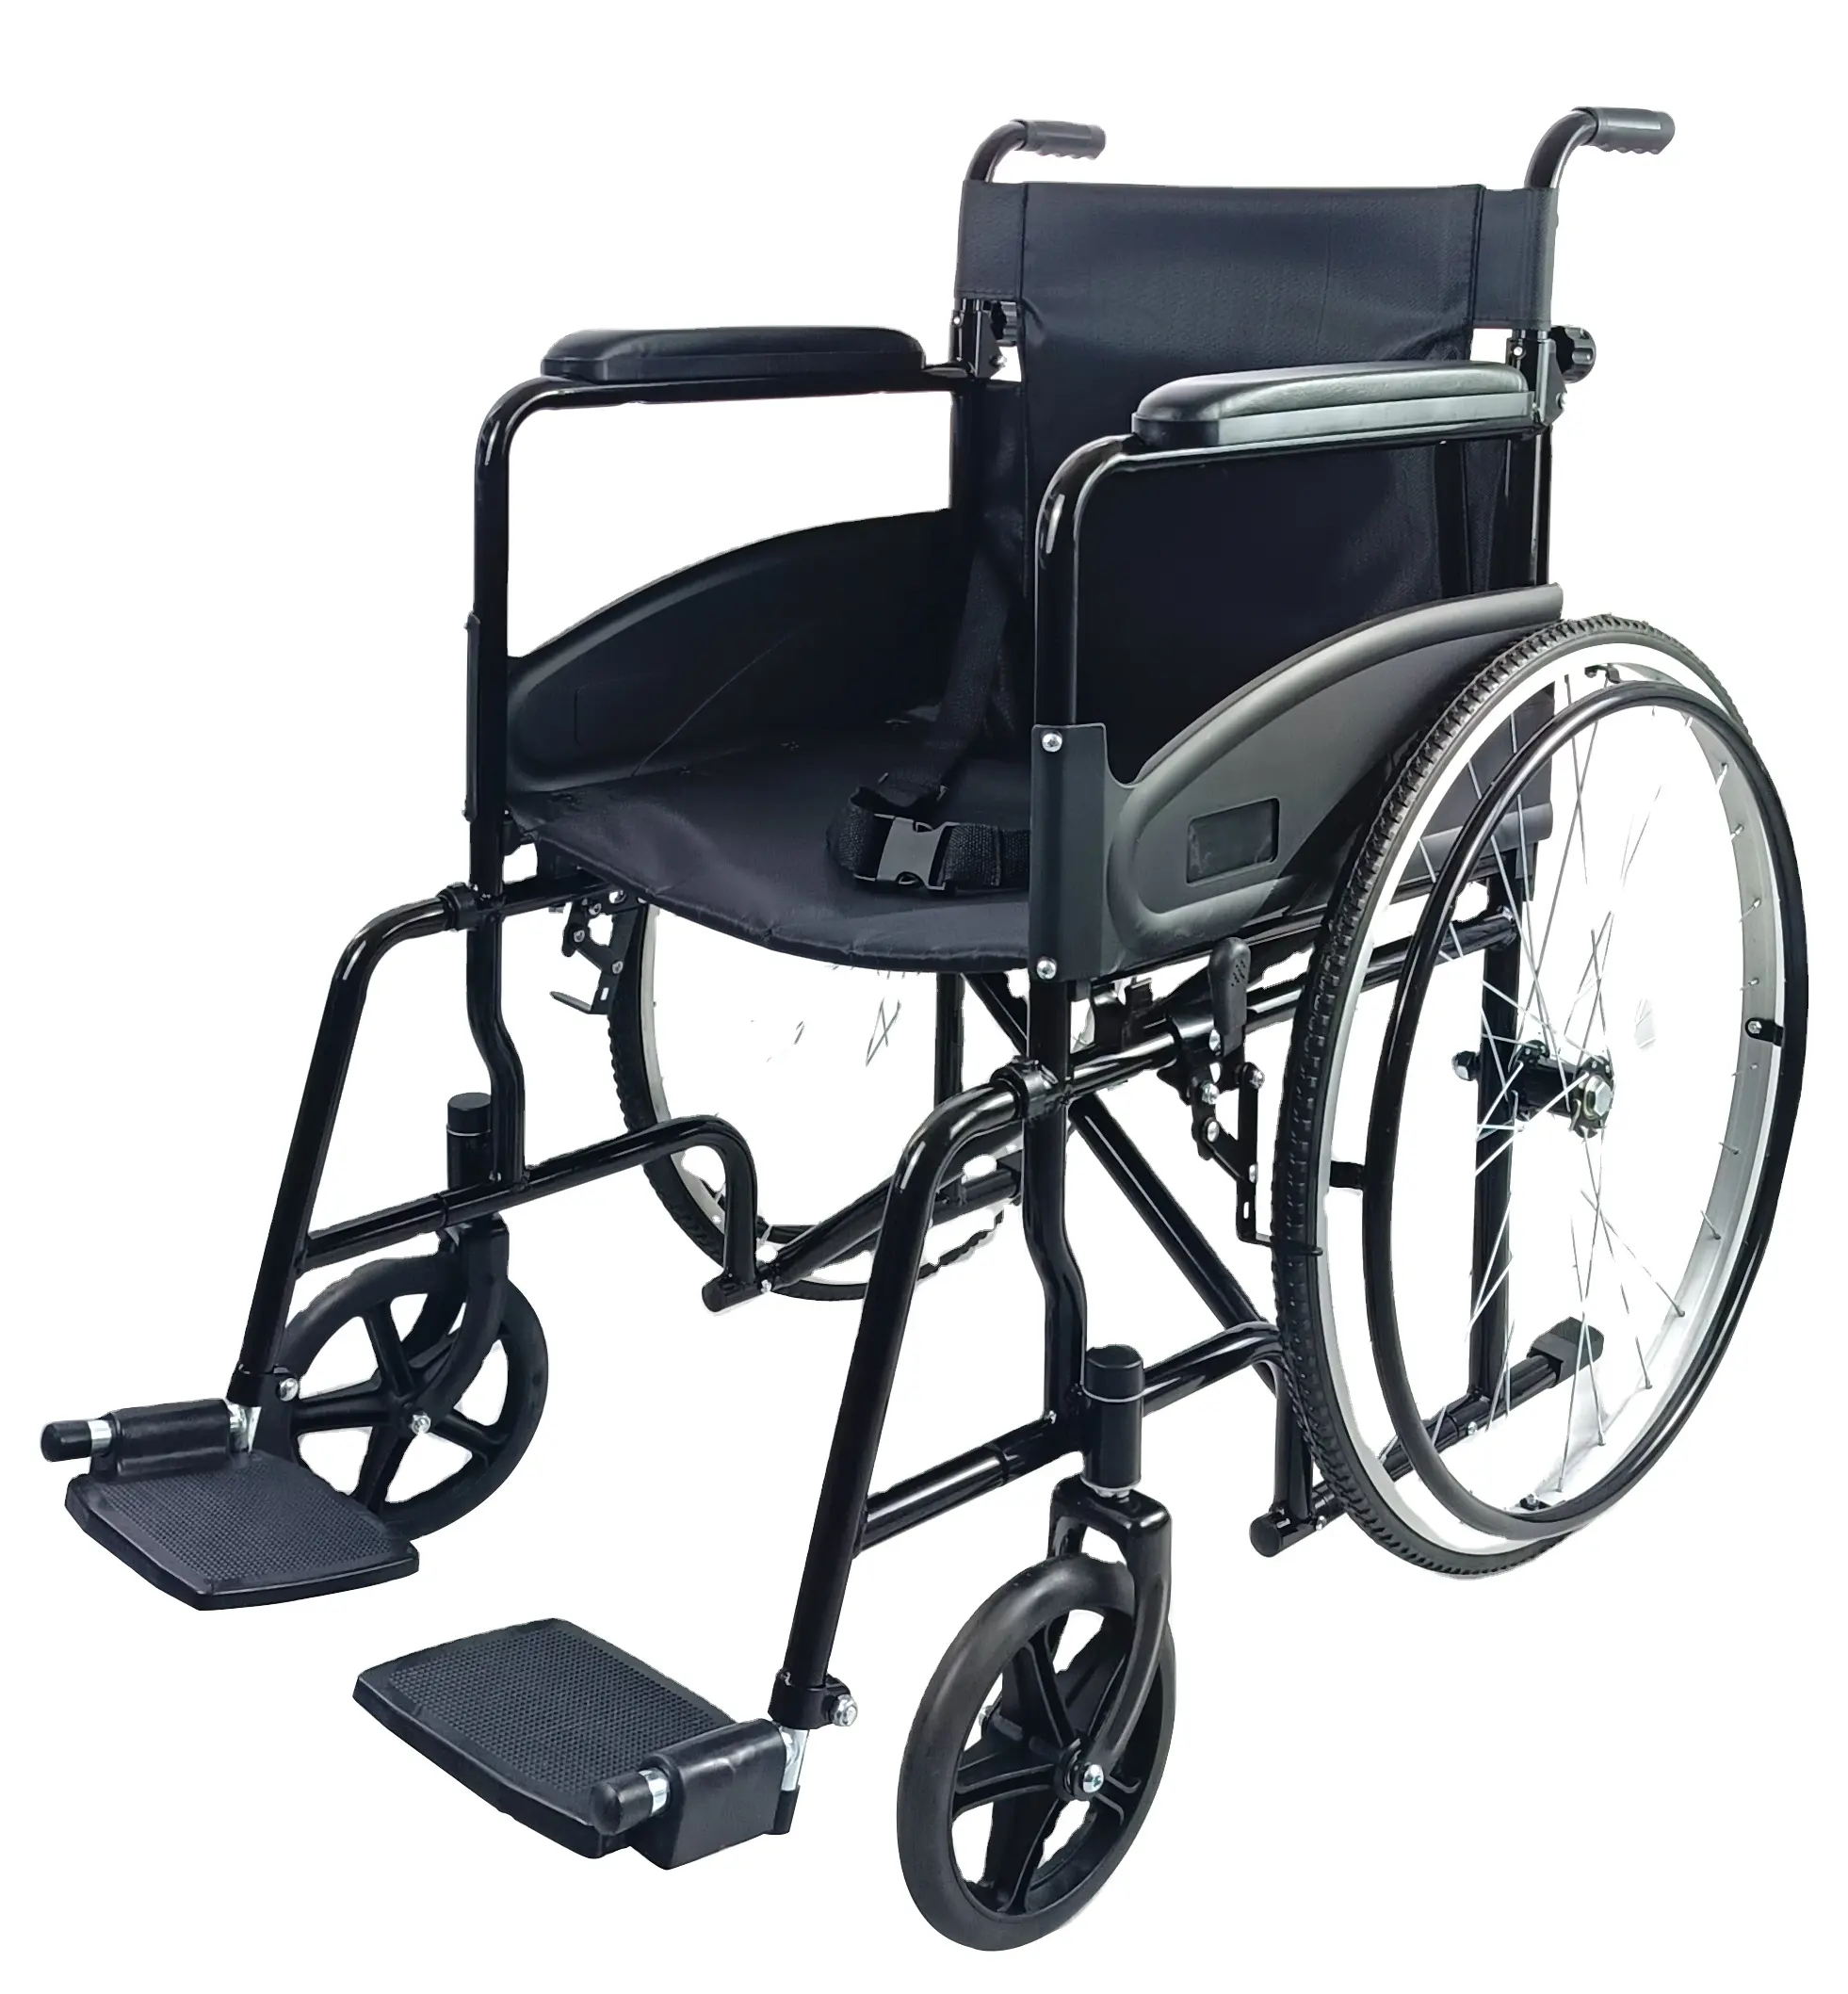 من المصنع مباشرة كرسي متحرك من Foshan عالي الجودة مصنوع من الصلب المطلي بالكروم والألومنيوم كرسي متحرك يدوي 809 قابل للطي للمعاقين